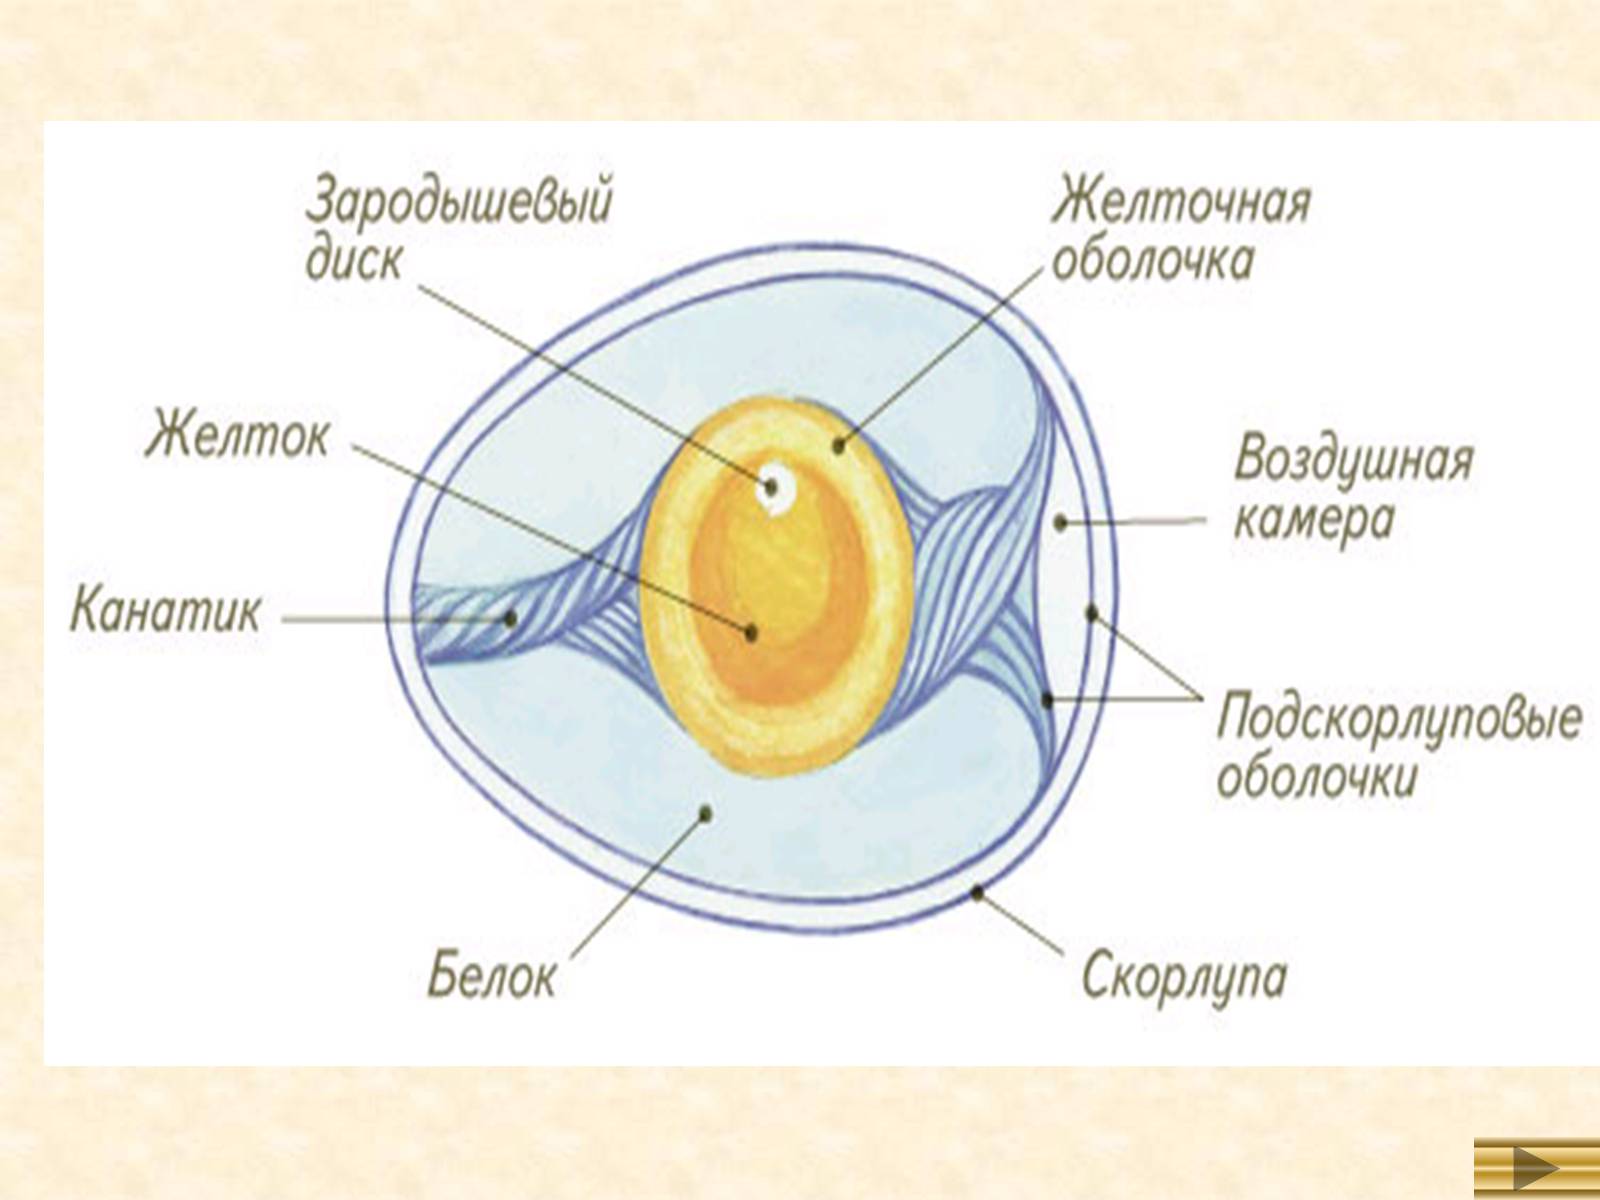 Основные части яйца птицы